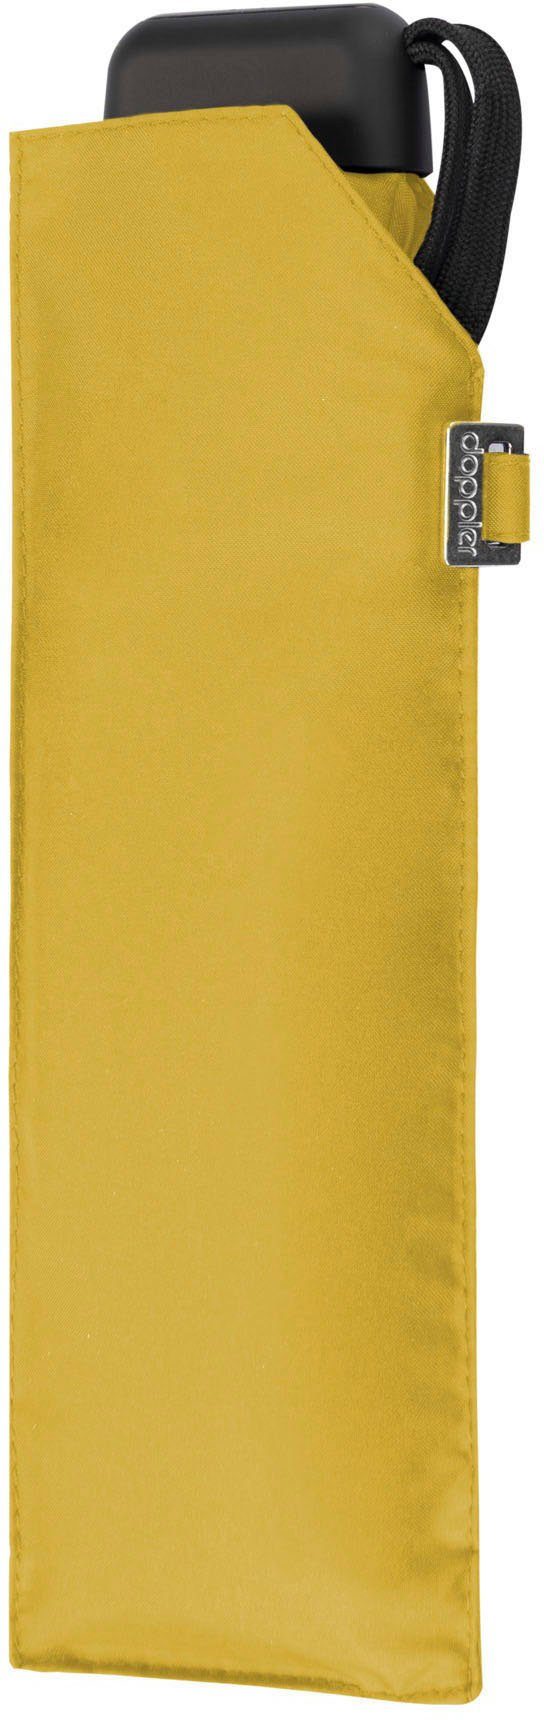 Slim shiny Taschenregenschirm yellow uni, doppler® Carbonsteel